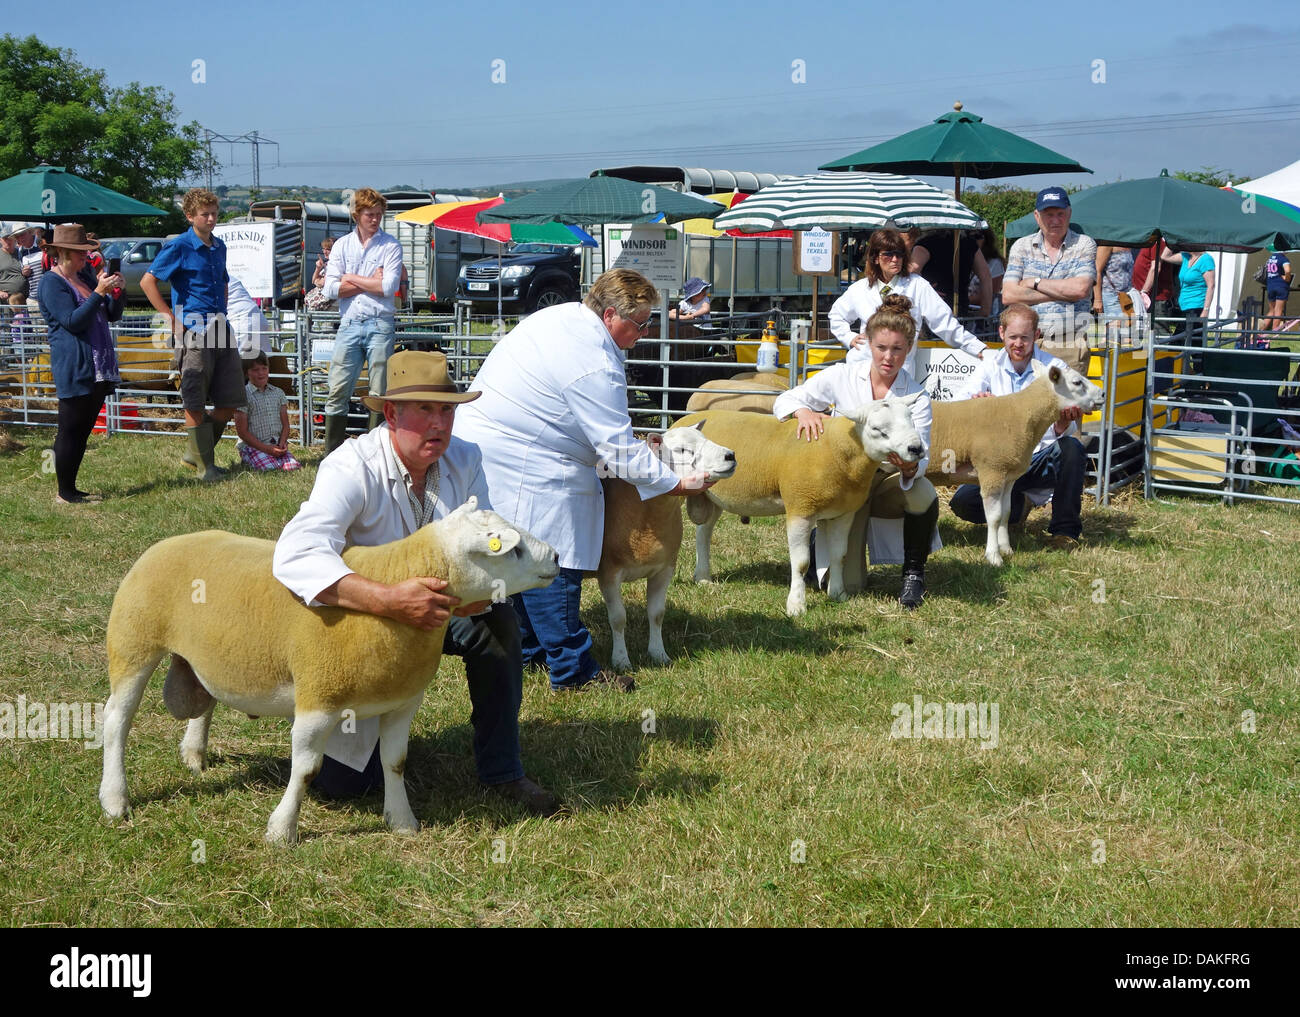 Montrant des moutons à l'Stithians Loegel jet l'agriculture et de l'agriculture dans la région de Cornwall, UK Banque D'Images